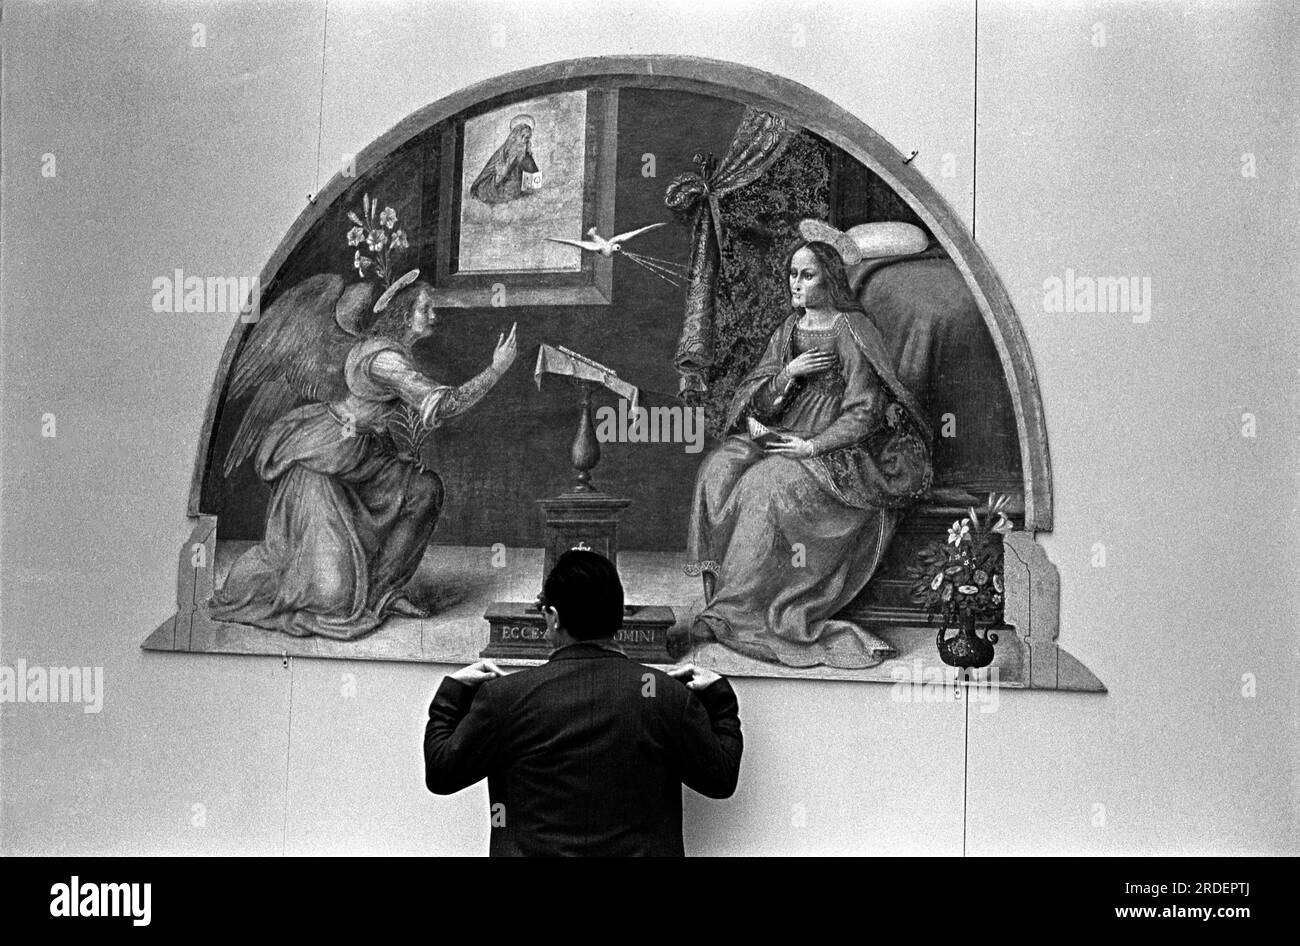 Hängen Sie die Fresken von Florenz auf, eine Kunstrat-Ausstellung in der Hayward Gallery. Ein italienischer Kunstexperte, der die Show aufhängt, misst den Abstand vom Boden, in dem ein Fresko aufgehängt wird. London, England, ca. 1969 1960er, UK HOMER SYKES Stockfoto